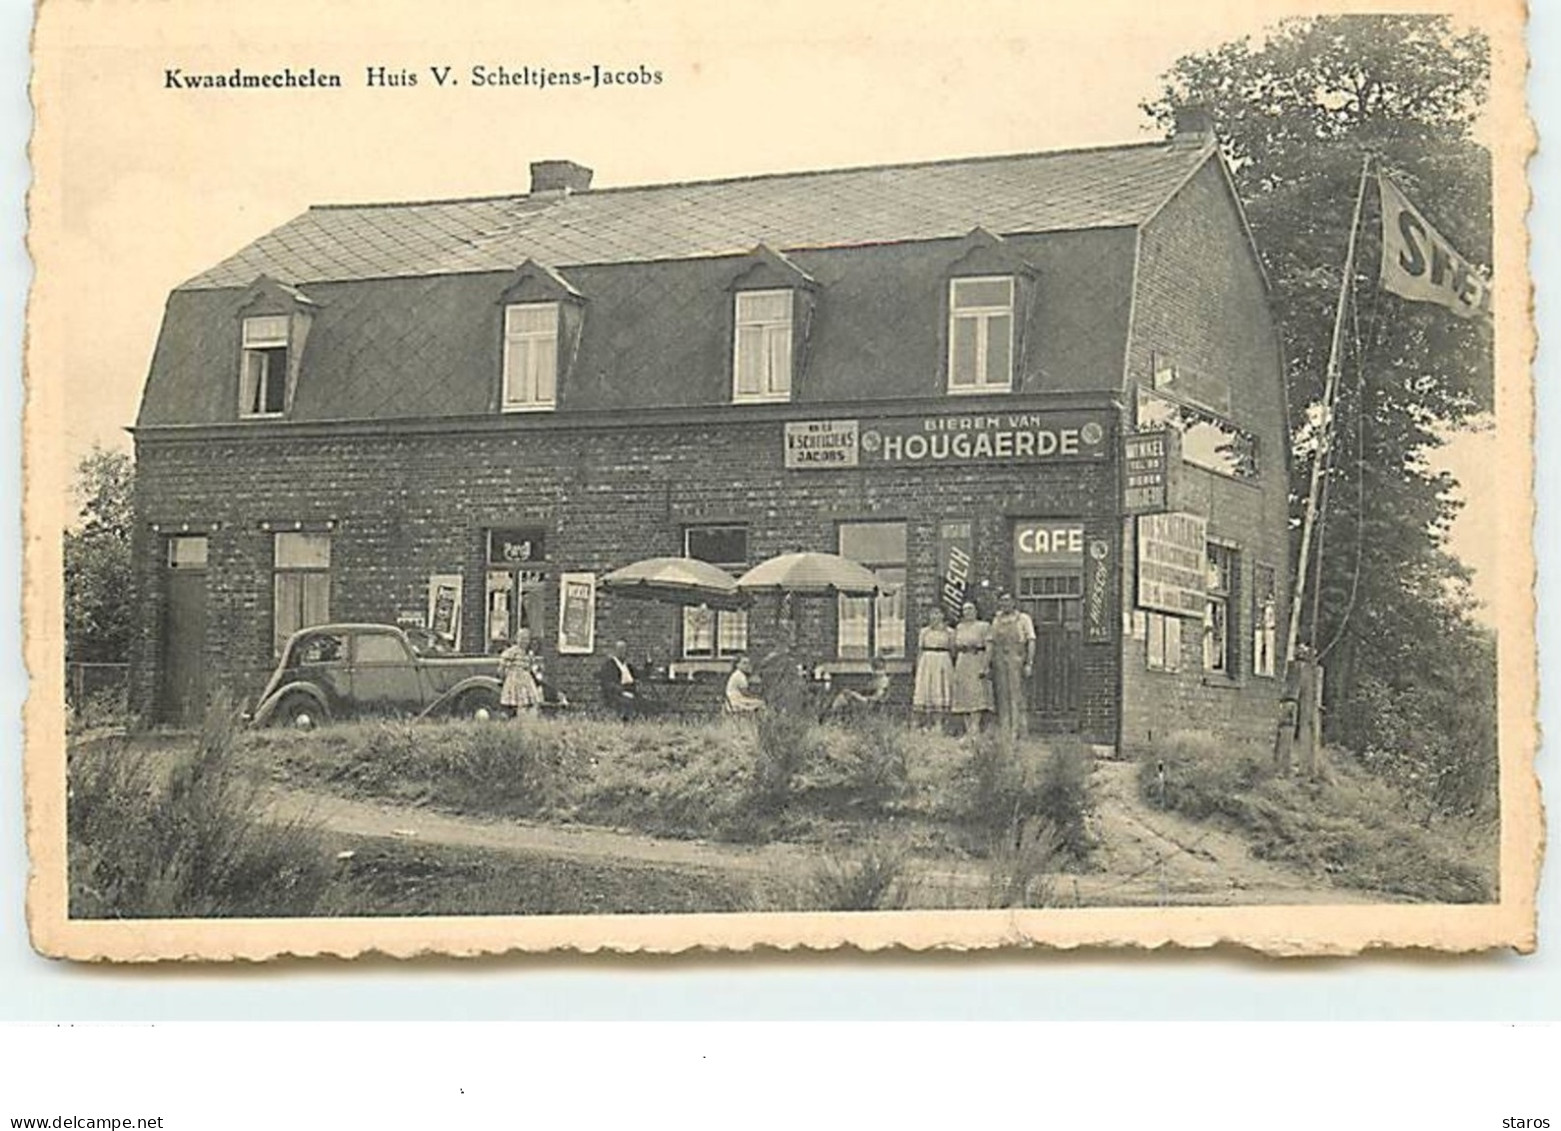 Kwaadmechelen - Huis V. Scheltjens-Jacobs - Ham